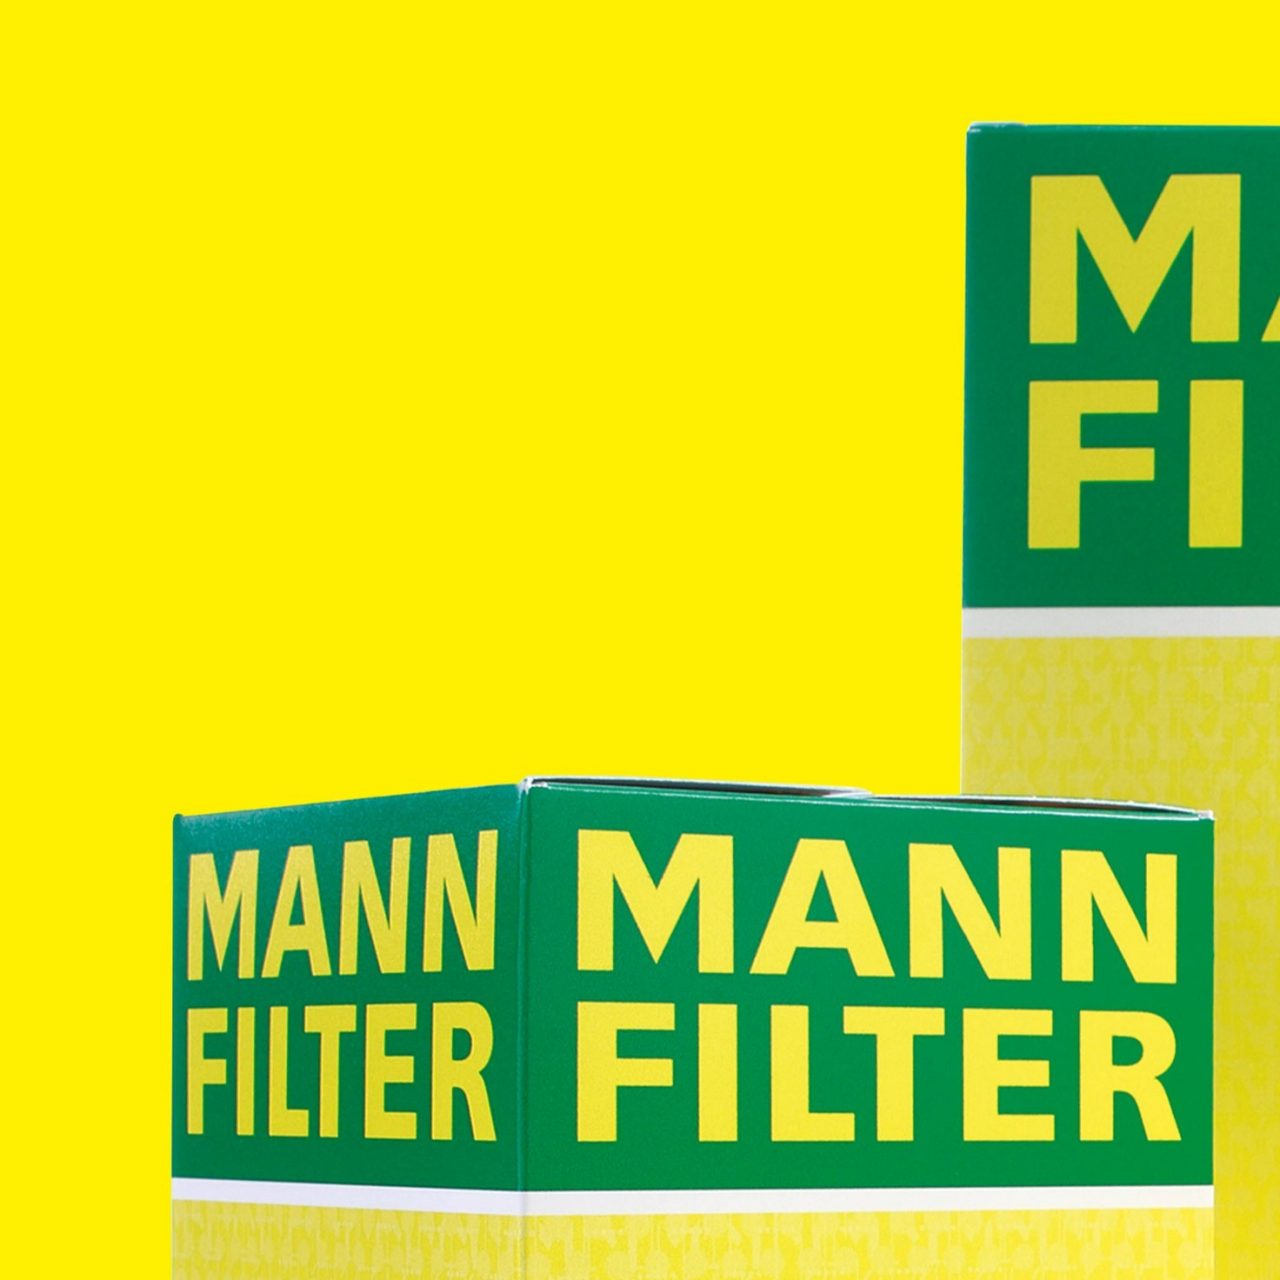 MANN-FILTER award partie 1